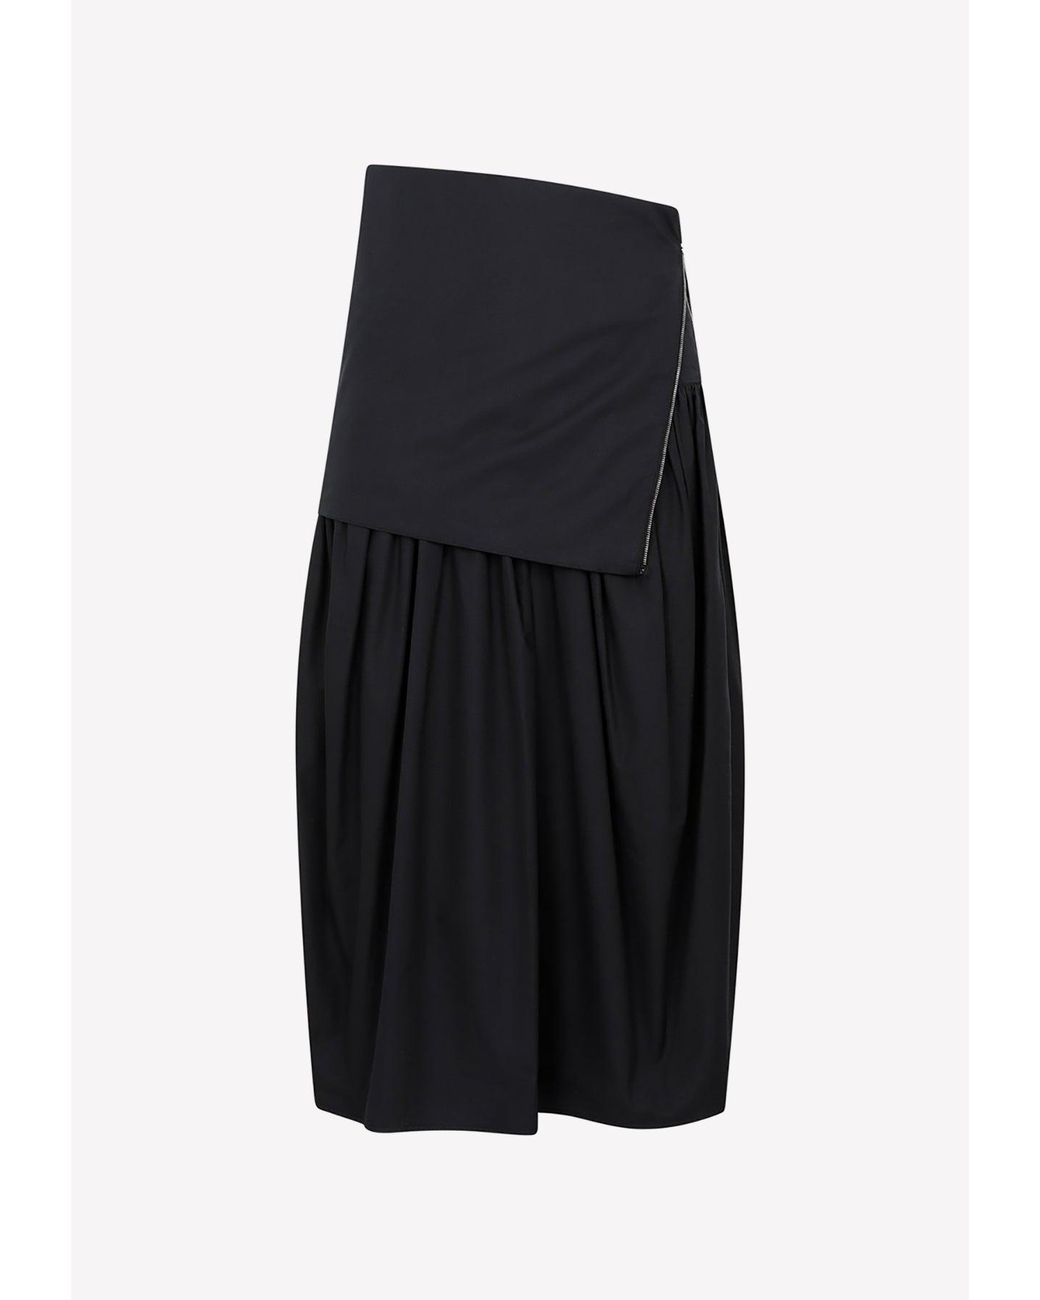 Lemaire Knee-length Asymmetric Skirt in Black | Lyst